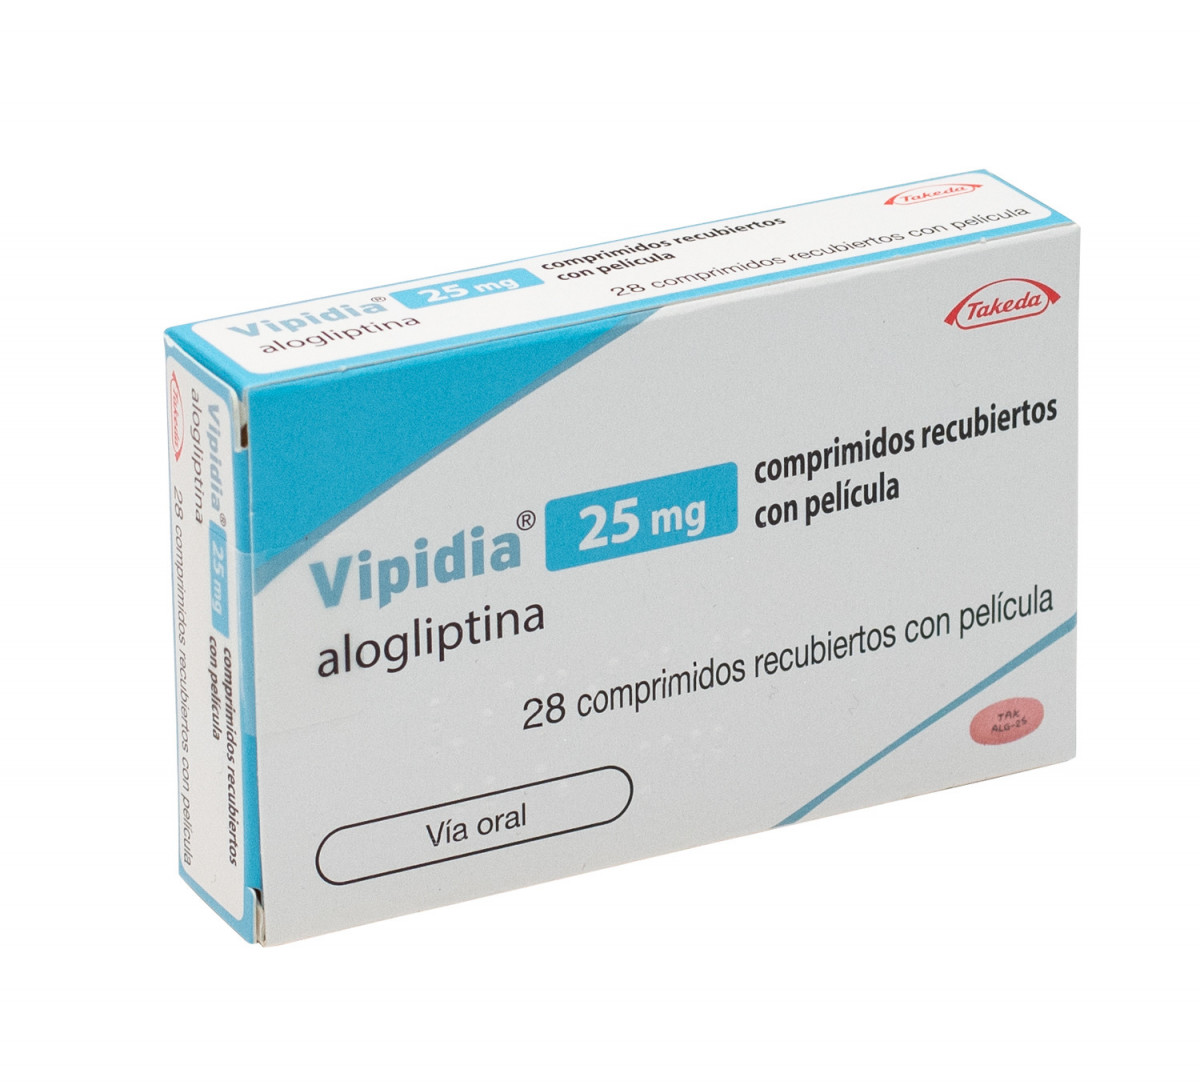 VIPIDIA 25 MG COMPRIMIDOS RECUBIERTOS CON PELICULA , 28 comprimidos fotografía del envase.